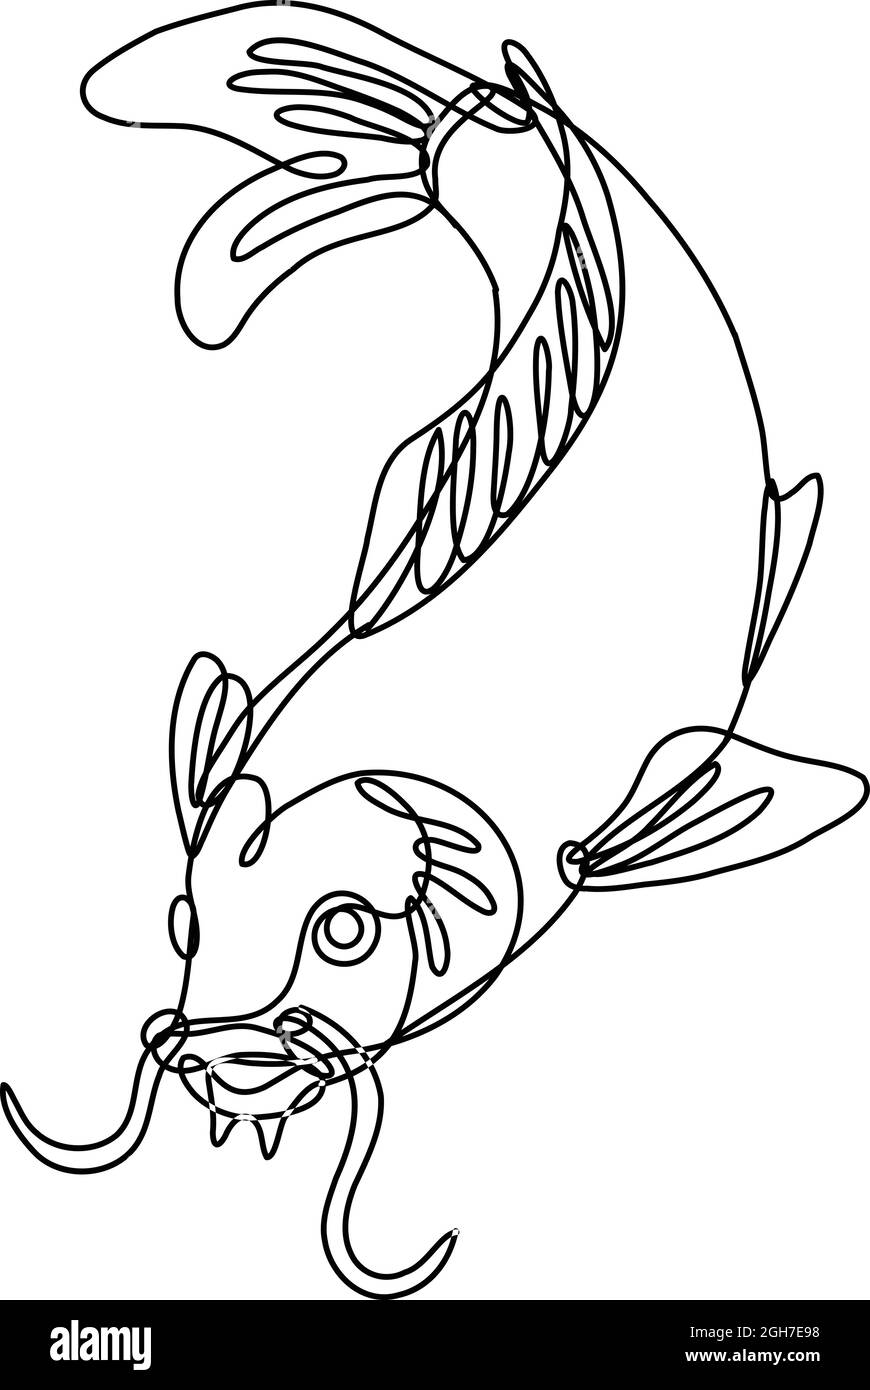 Dessin en ligne continue illustration d'un poisson de carpe nishikigoi koi plongée fait en ligne mono ou en style doodle en noir et blanc sur le dos isolé Illustration de Vecteur